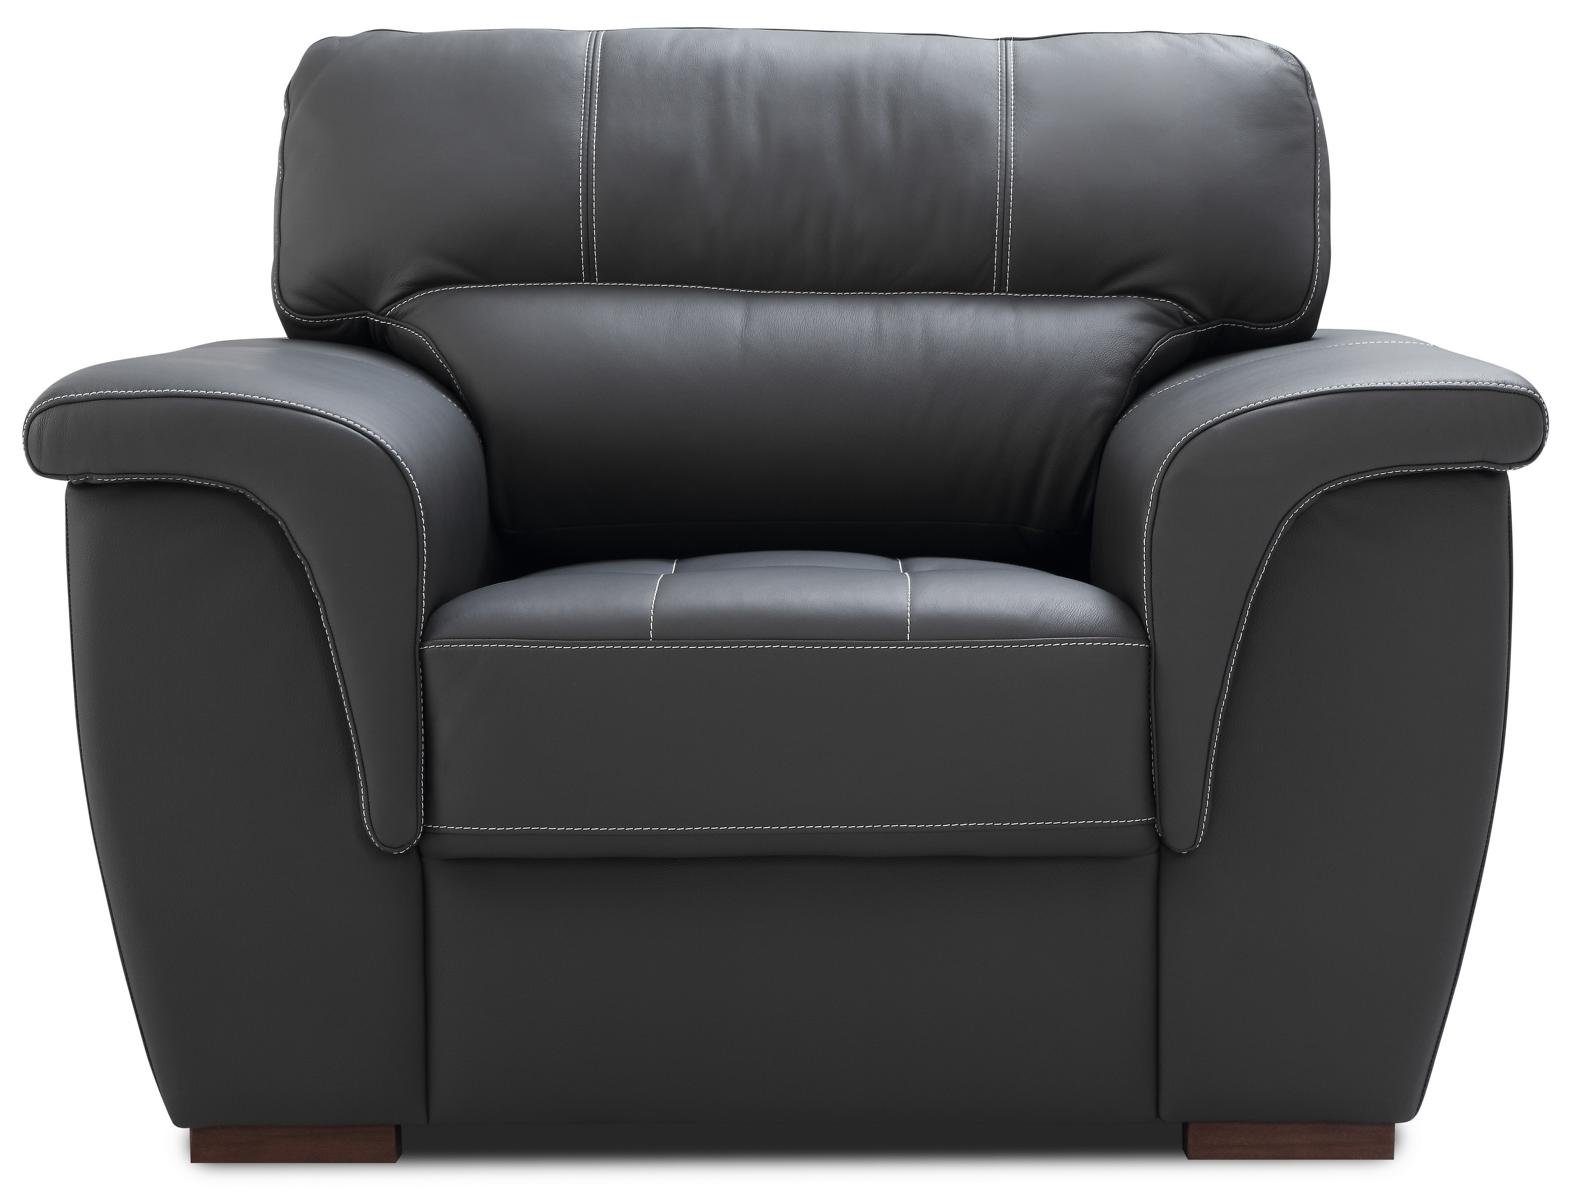 JVmoebel Wohnzimmer-Set, Sitz Garnituren 3+1+1 Polster Leder Garnitur Design Couch Sofa